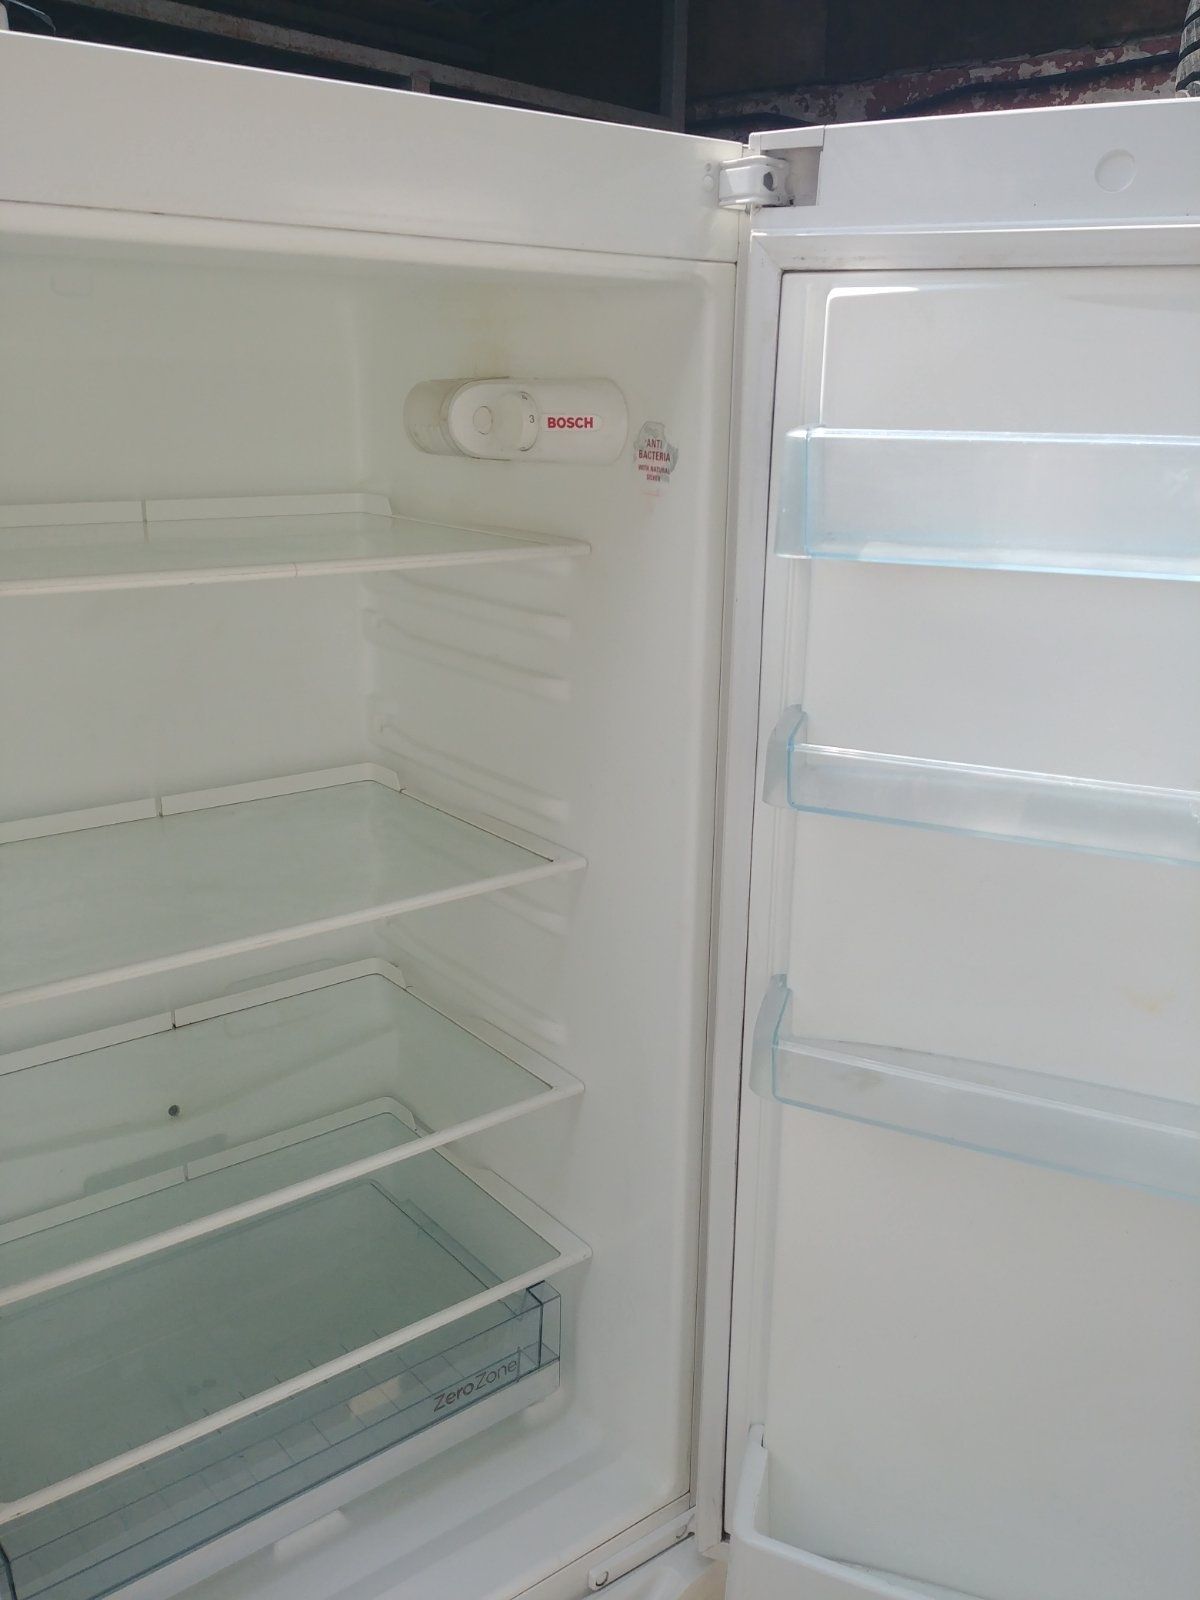 Холодильник Сіменс-Бош, в-ва Німеччини, 178см. висотою, з гарантією !!